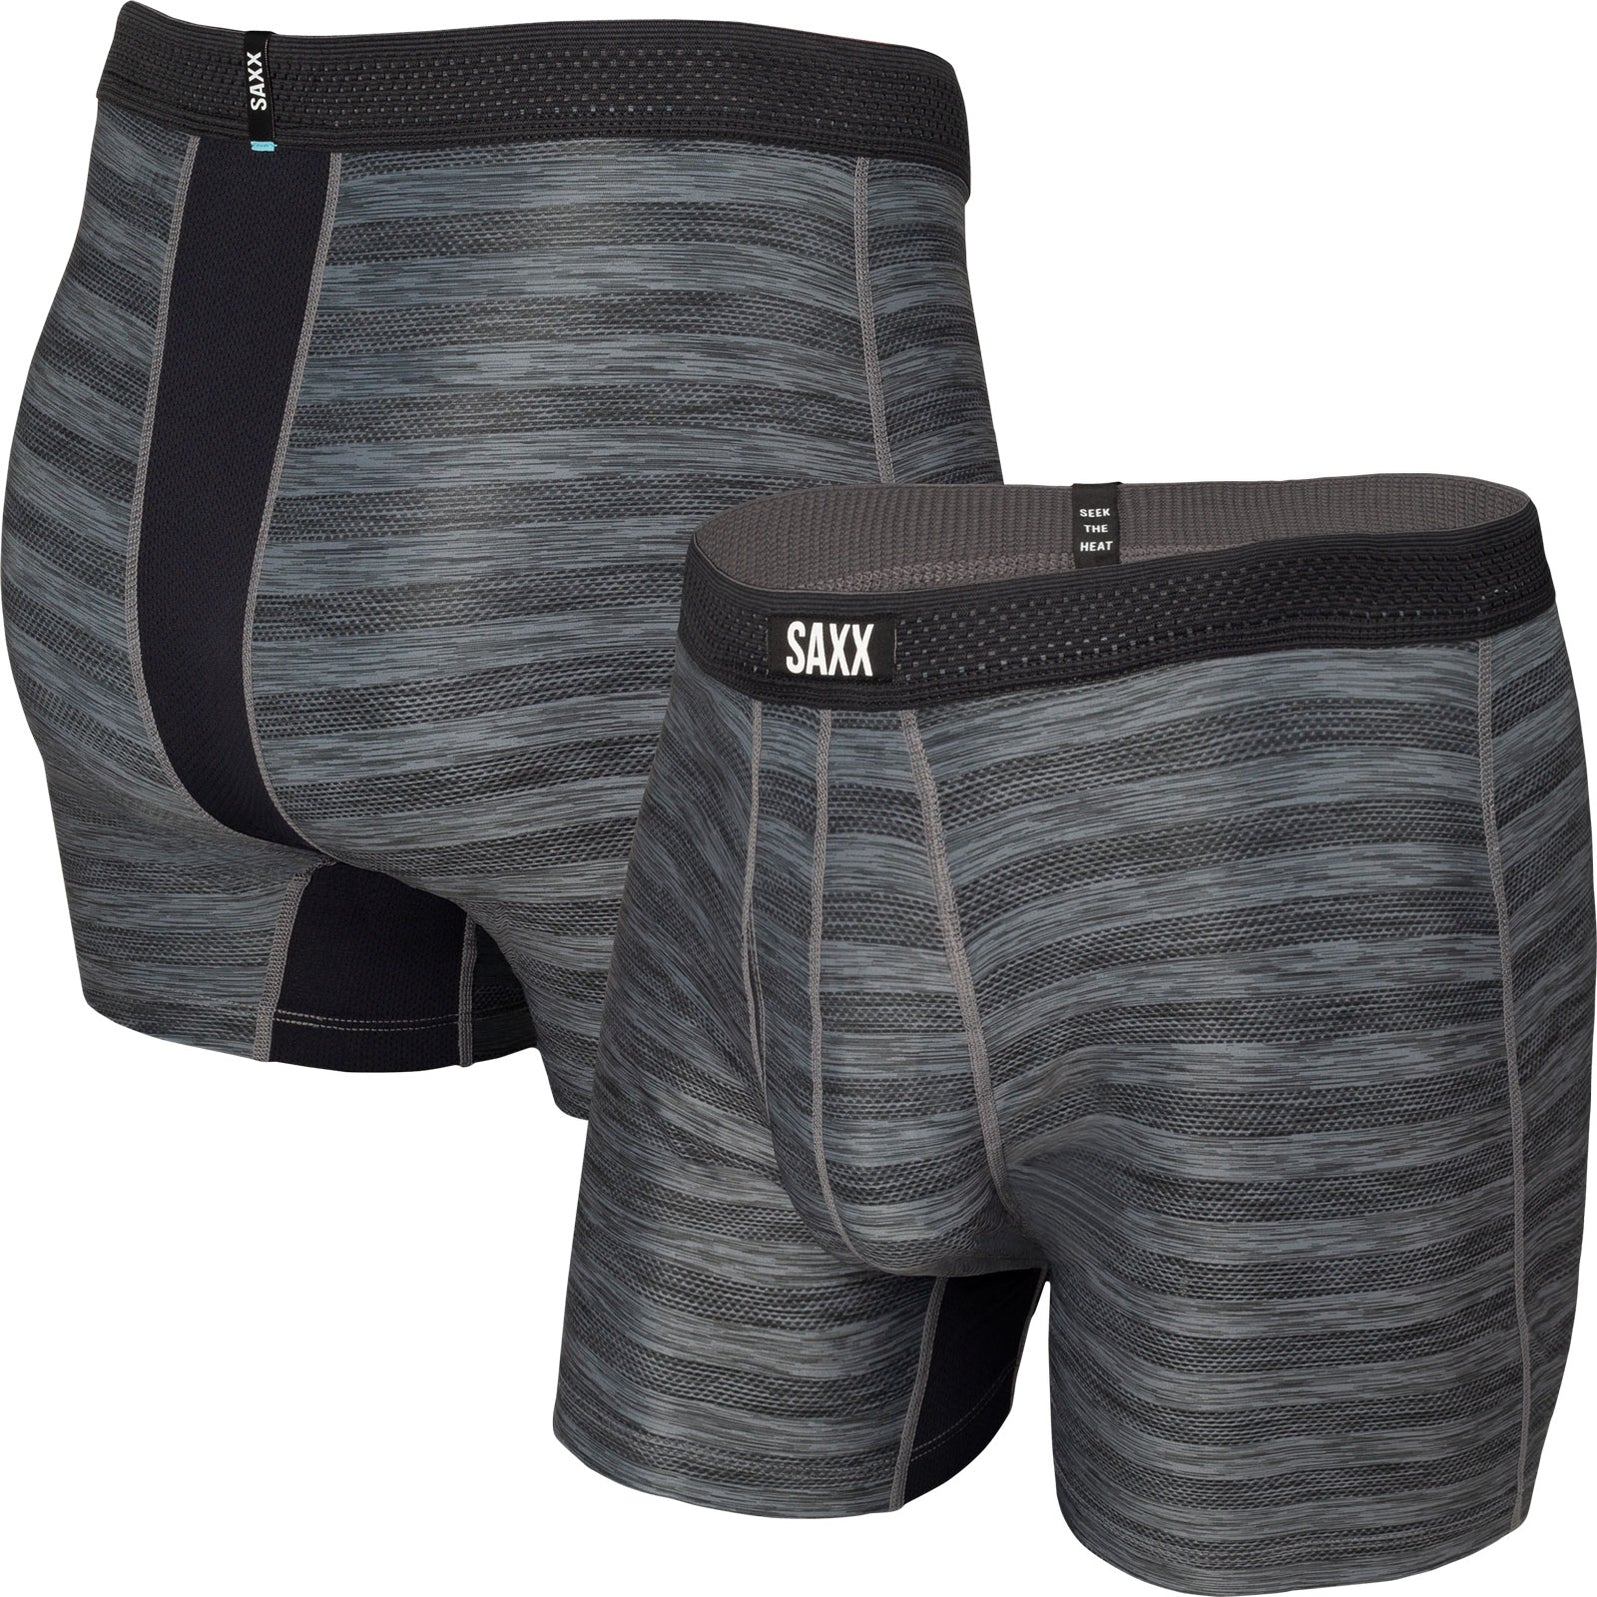 SAXX Underwear | Men's SAXX Underwear | SAXX Kinetic — Baselayer Ltd